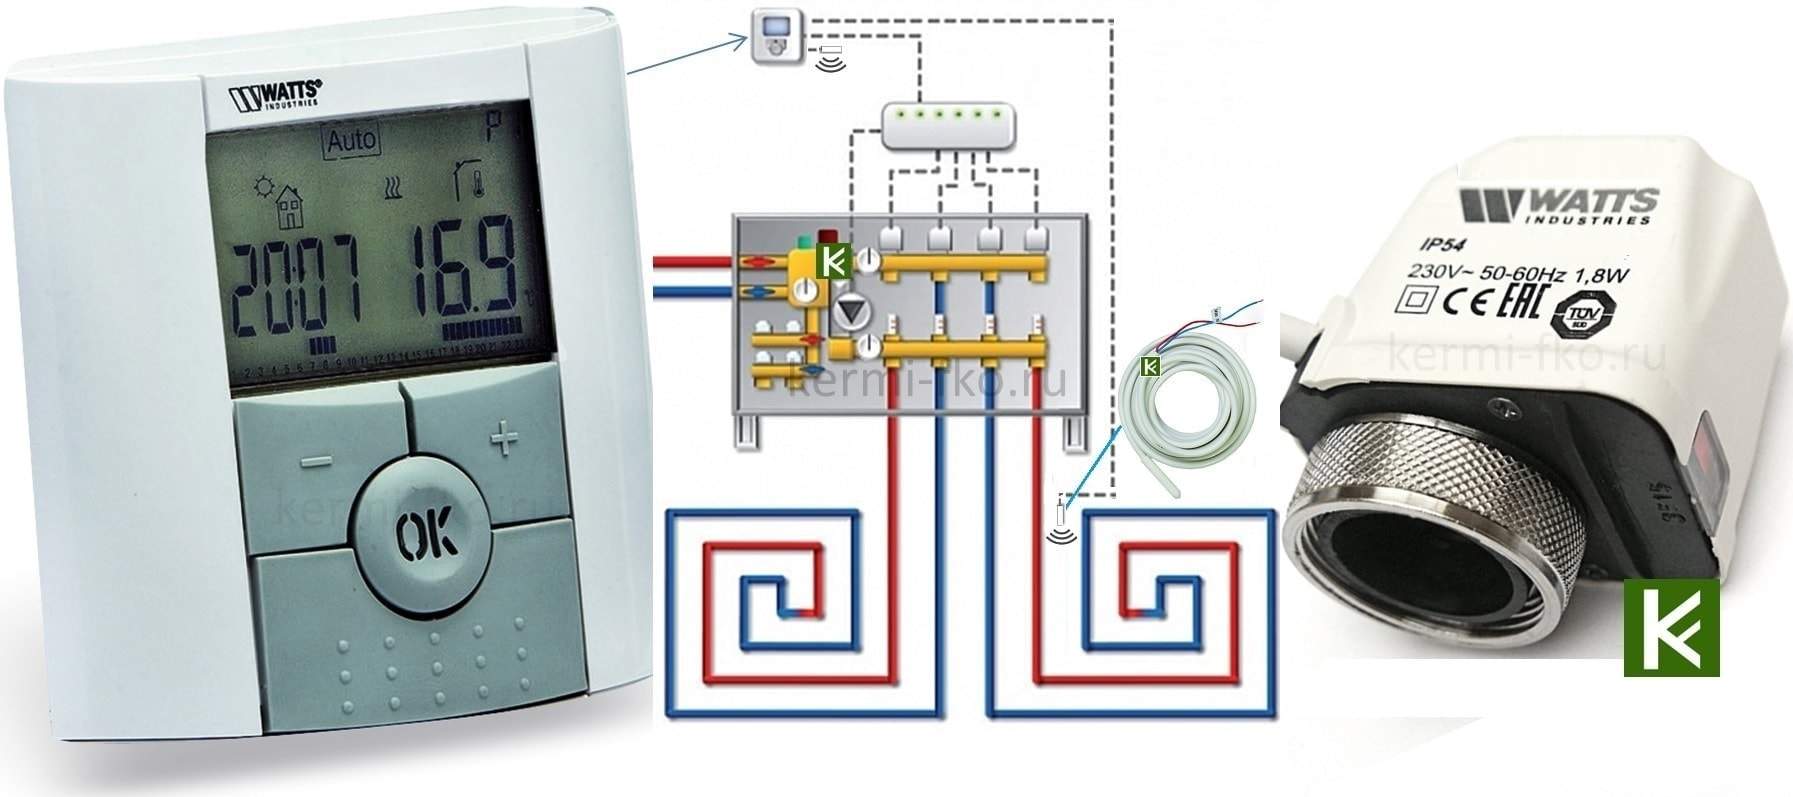 10025807 BTDP Watts Автоматика для теплого пола водяного купить термостат сервопривод датчик для теплого пола фото цена Москва умный дом